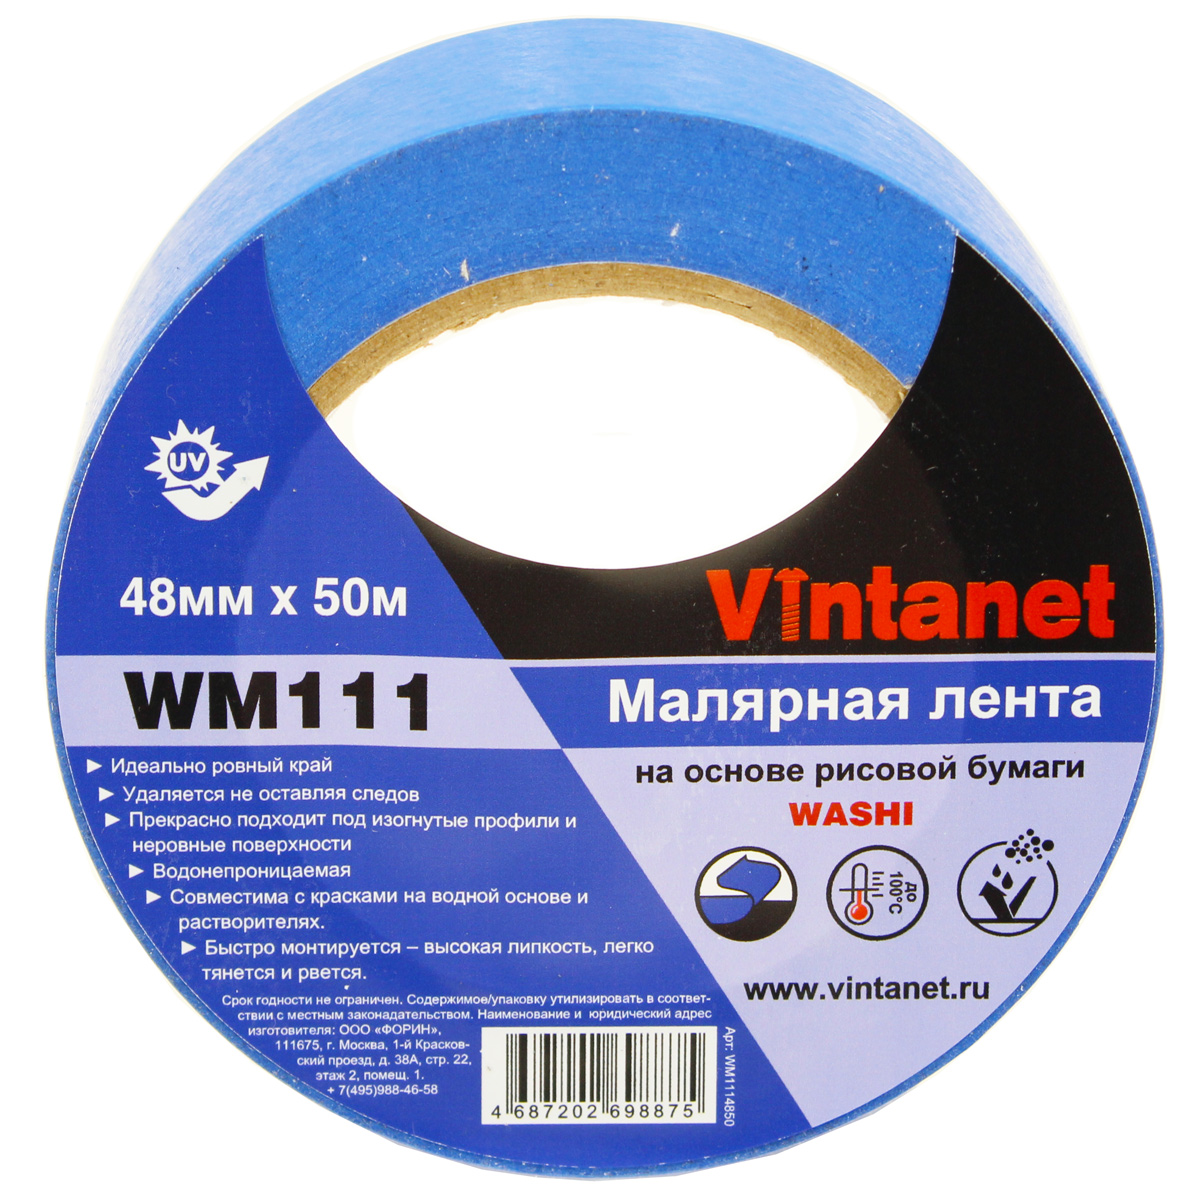 Лента малярная на основе рисовой бумаги Washi, Vintanet WM111, 48мм х 50м, WM1114850 бумага ная односторонняя